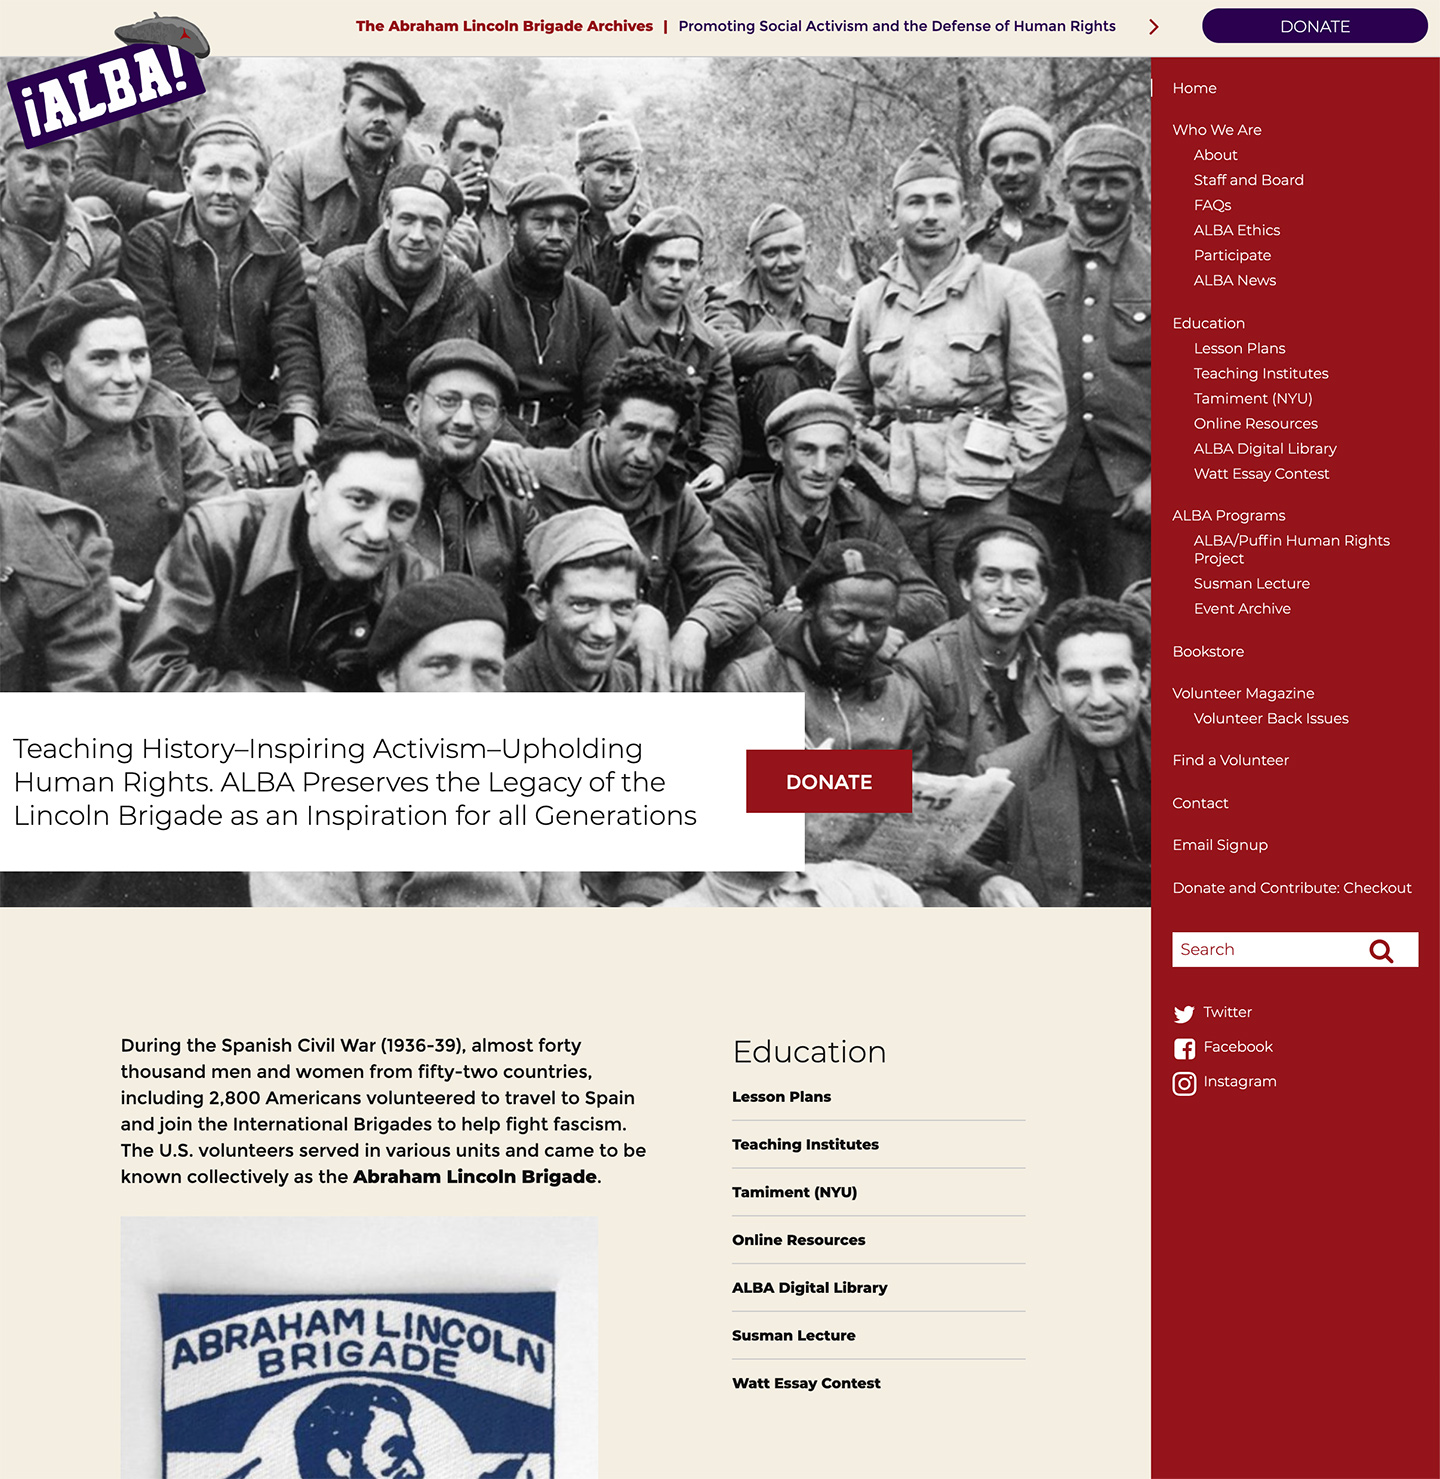 The Abraham Lincoln Brigade Archives (ALBA): Abraham Lincoln Brigade Archives: homepage